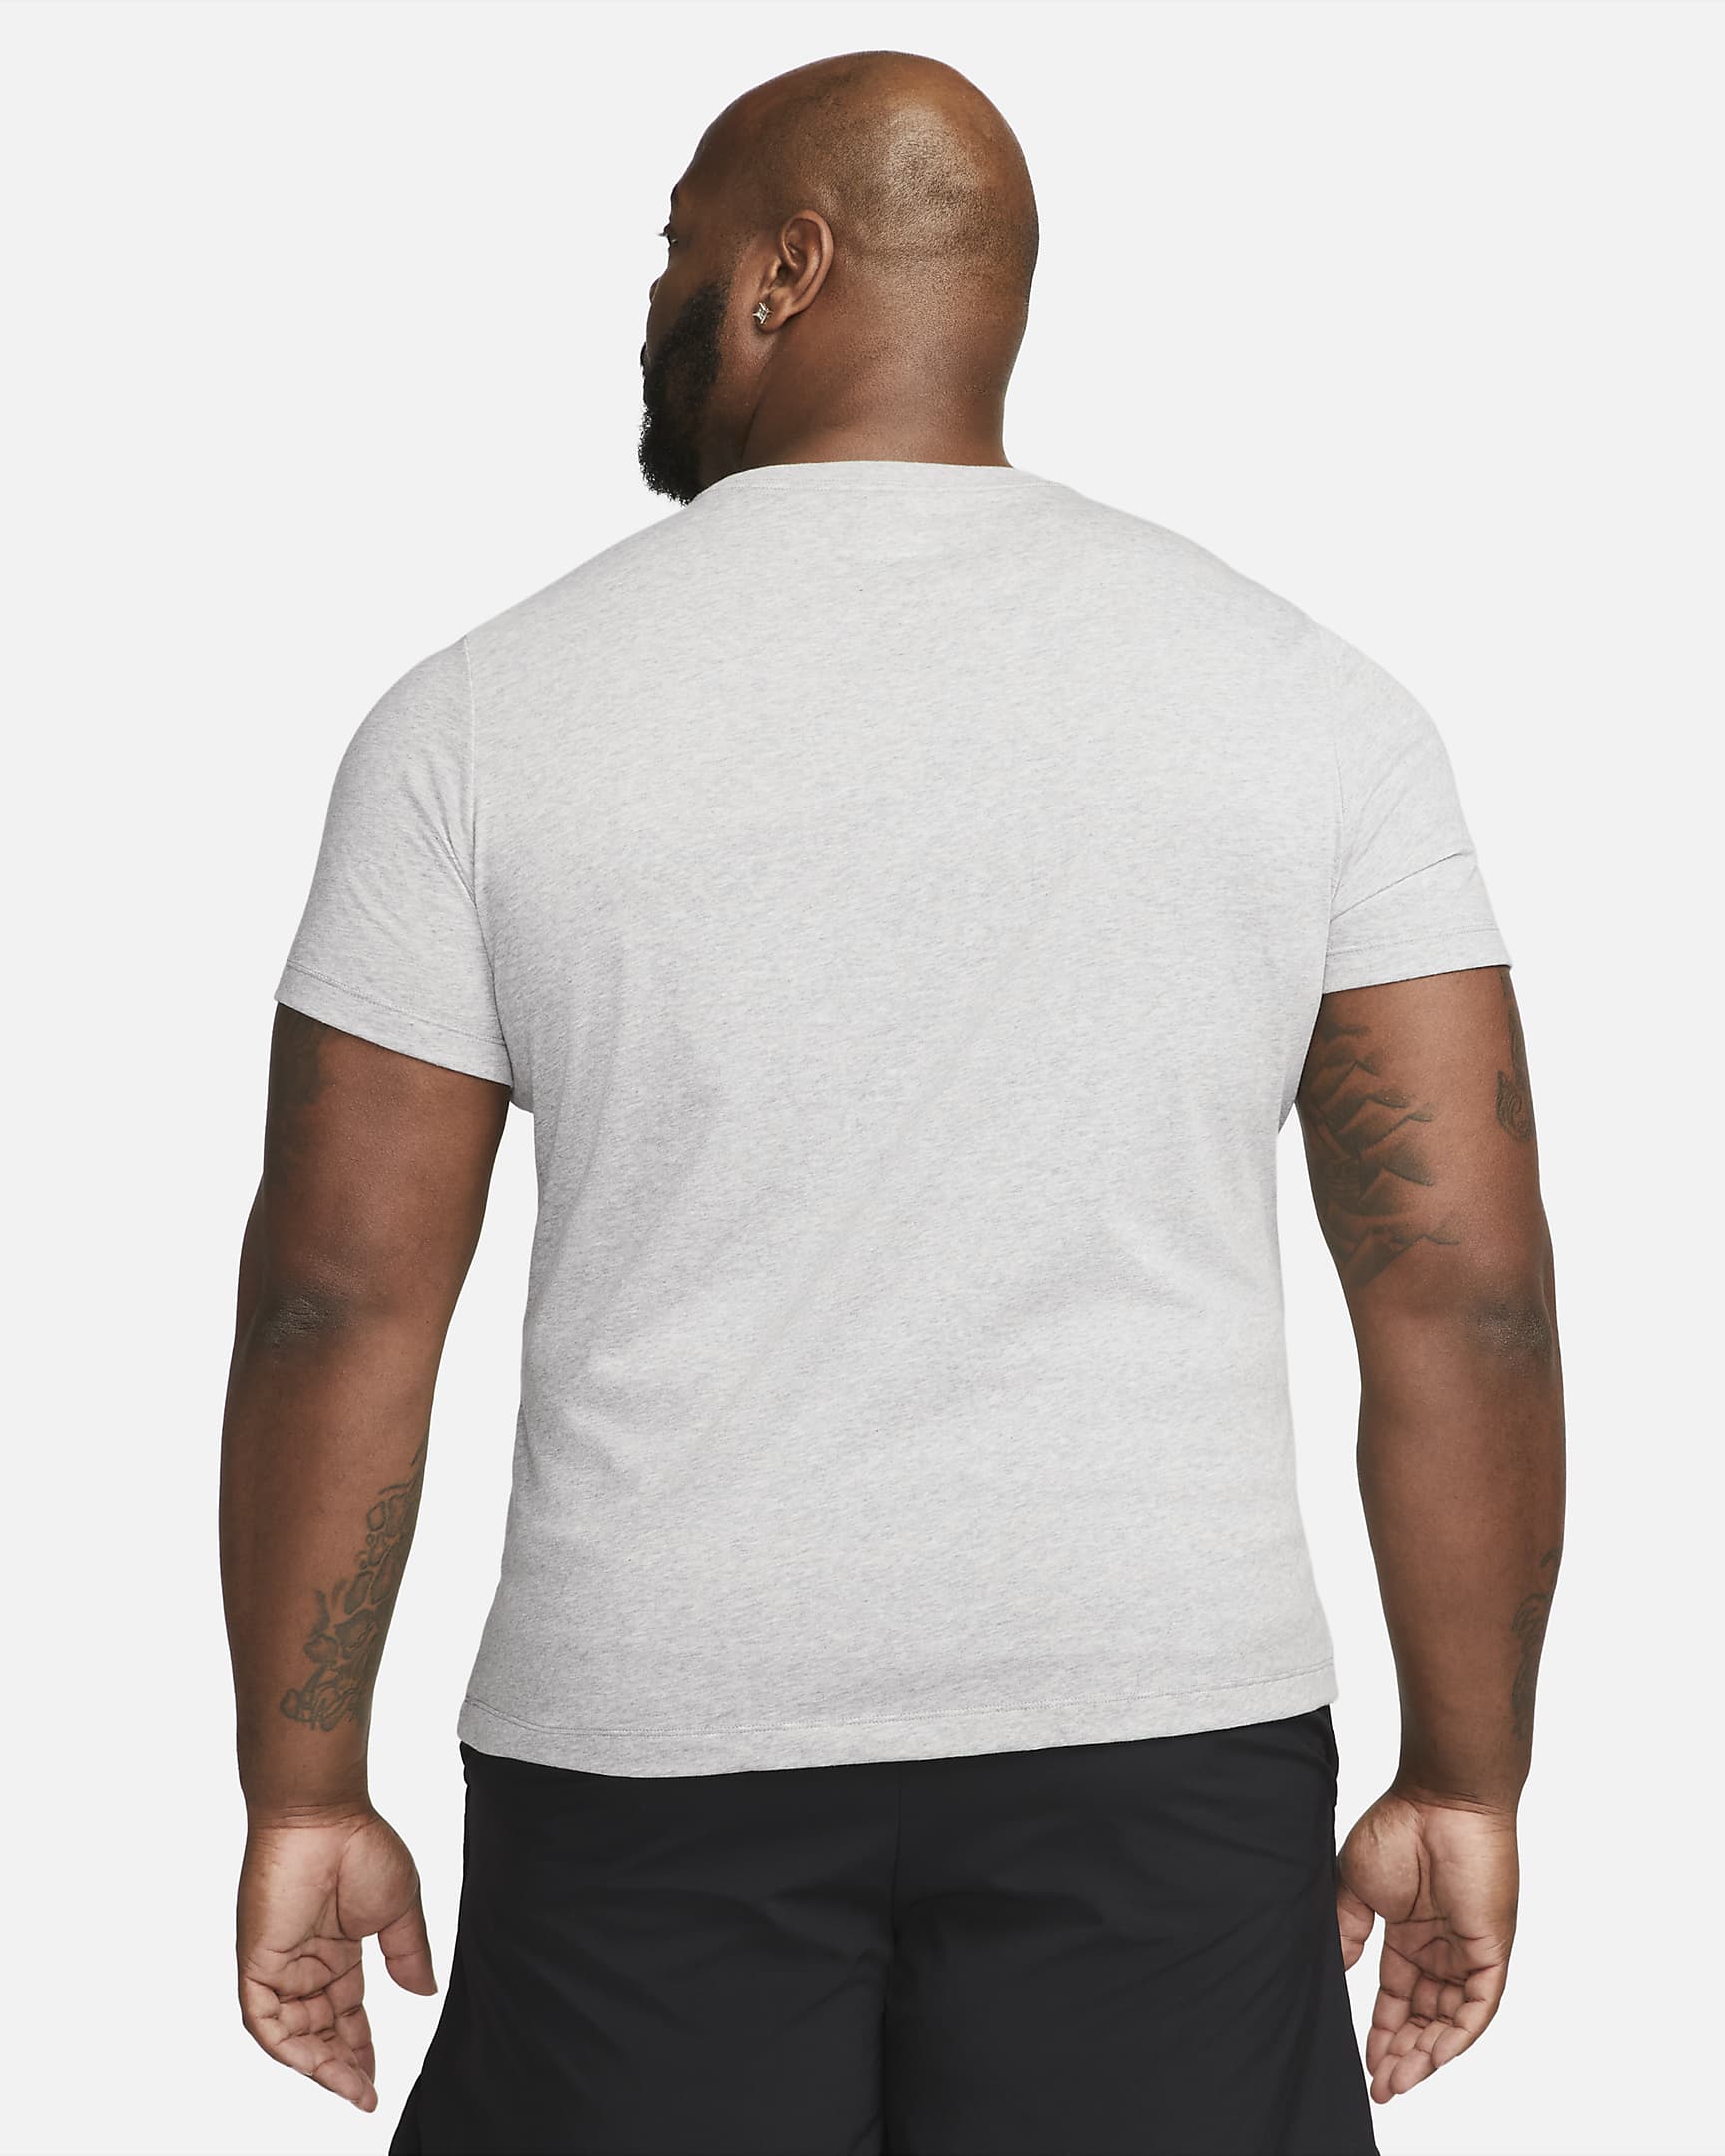 Nike Dri-FIT Men's Fitness T-Shirt - Dark Grey Heather/Black